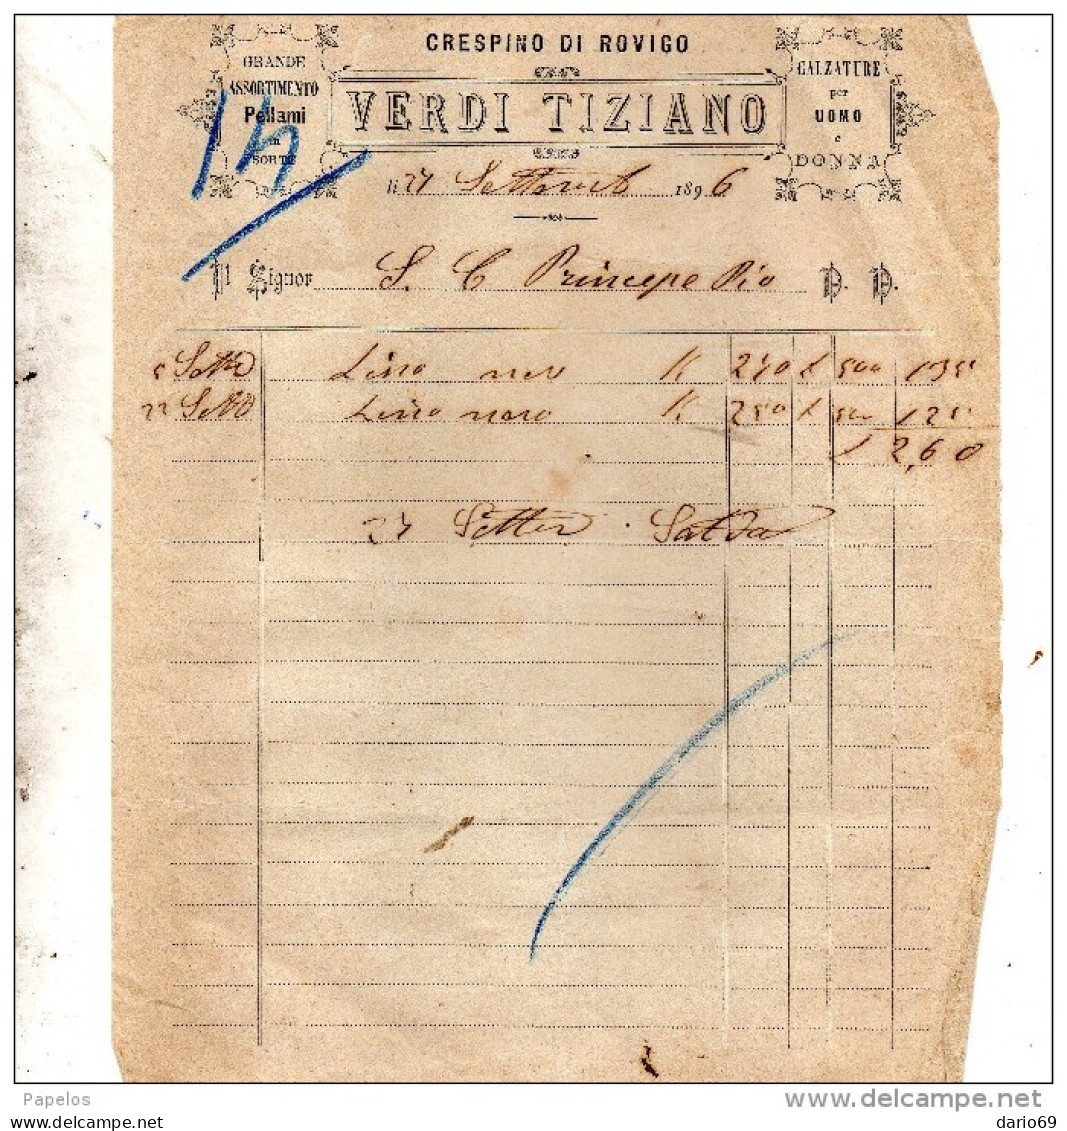 1896 CRESPINO ROVIGO - VERDI TIZIANO - CALZATURE PER UOMO - Italie